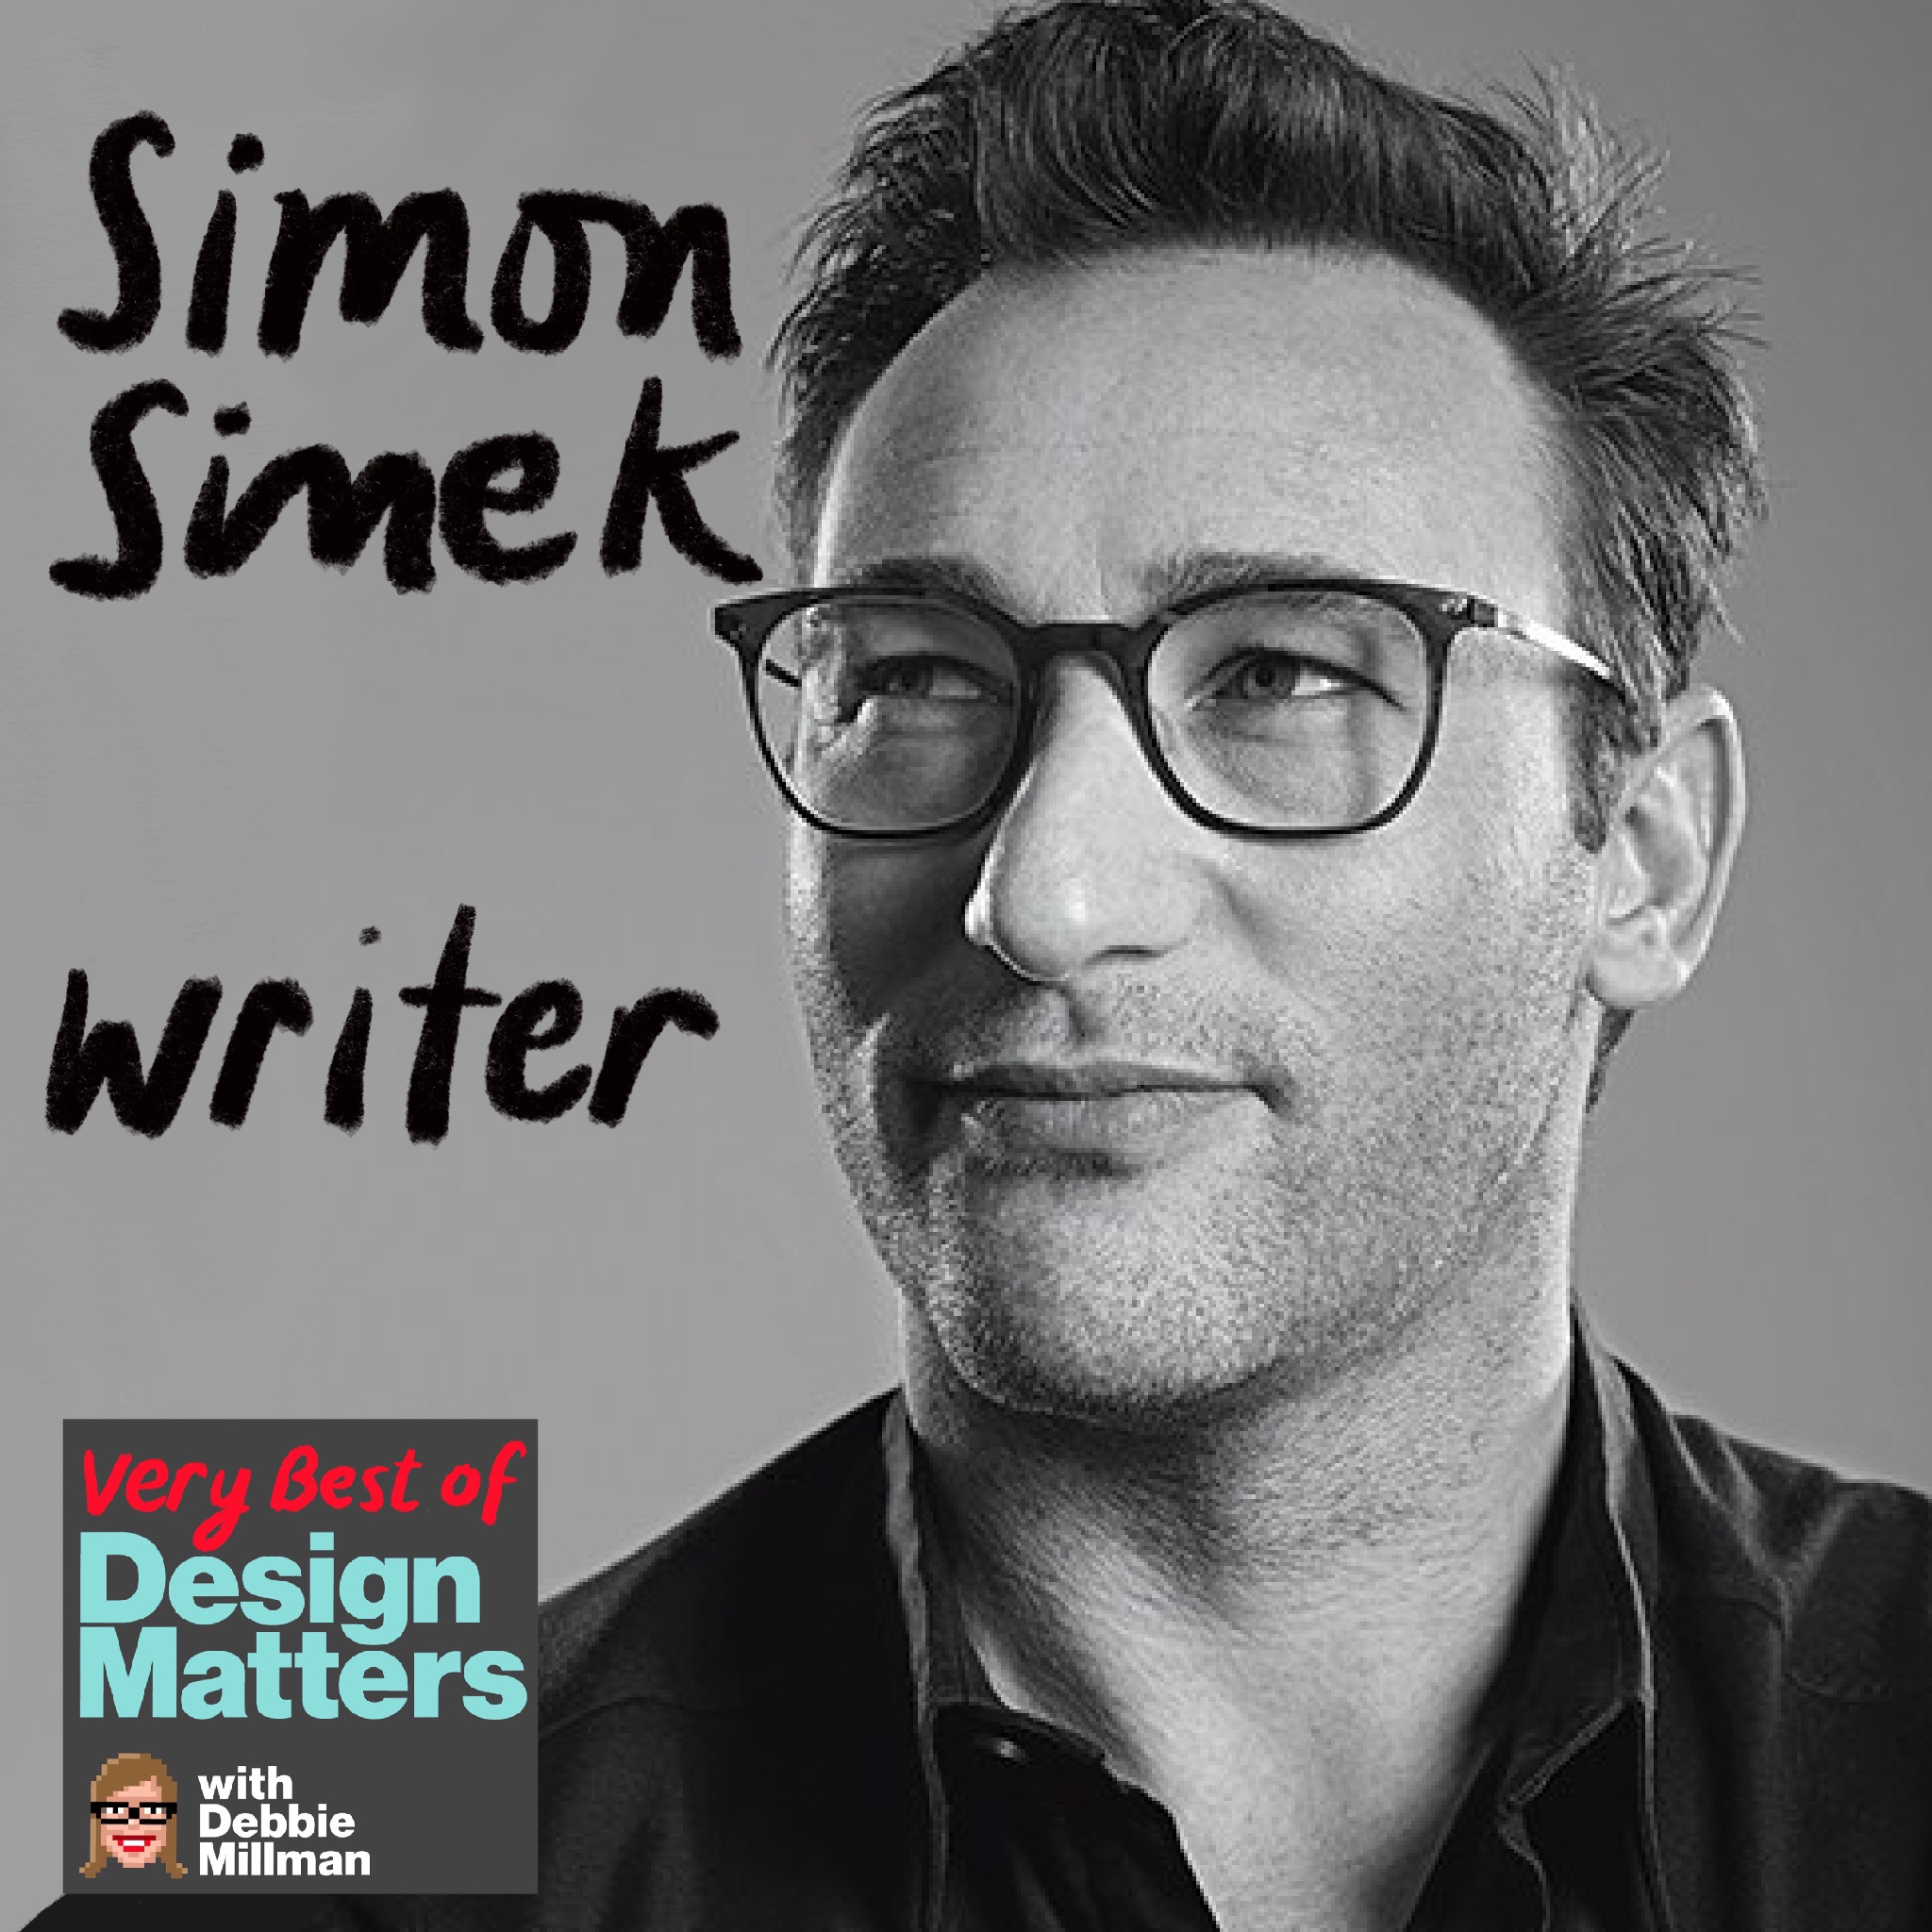 Best of Design Matters: Simon Sinek